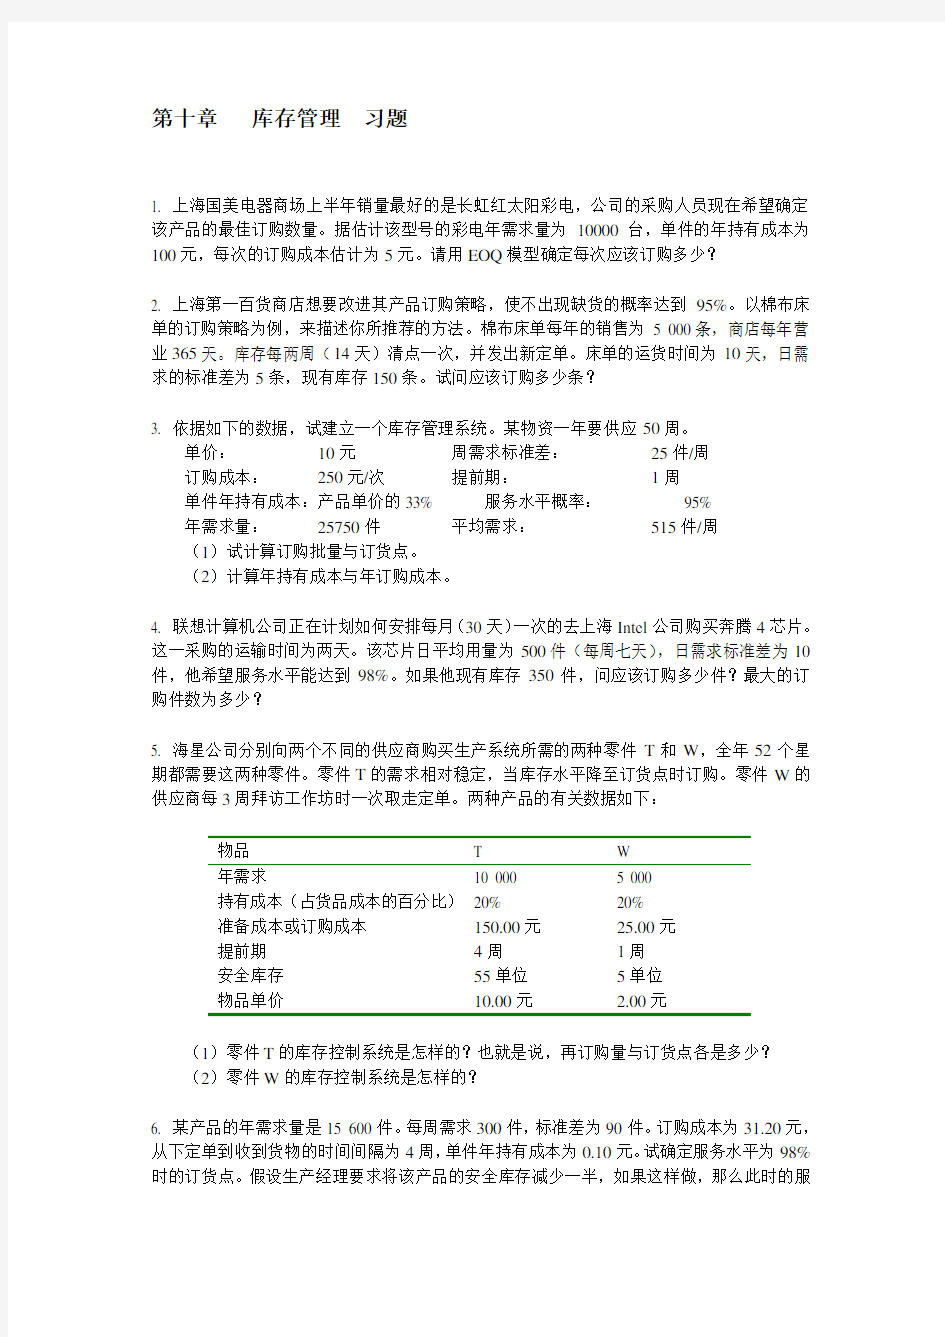 上海交通大学【库存管理】安泰经济与管理学院《运营管理》习题